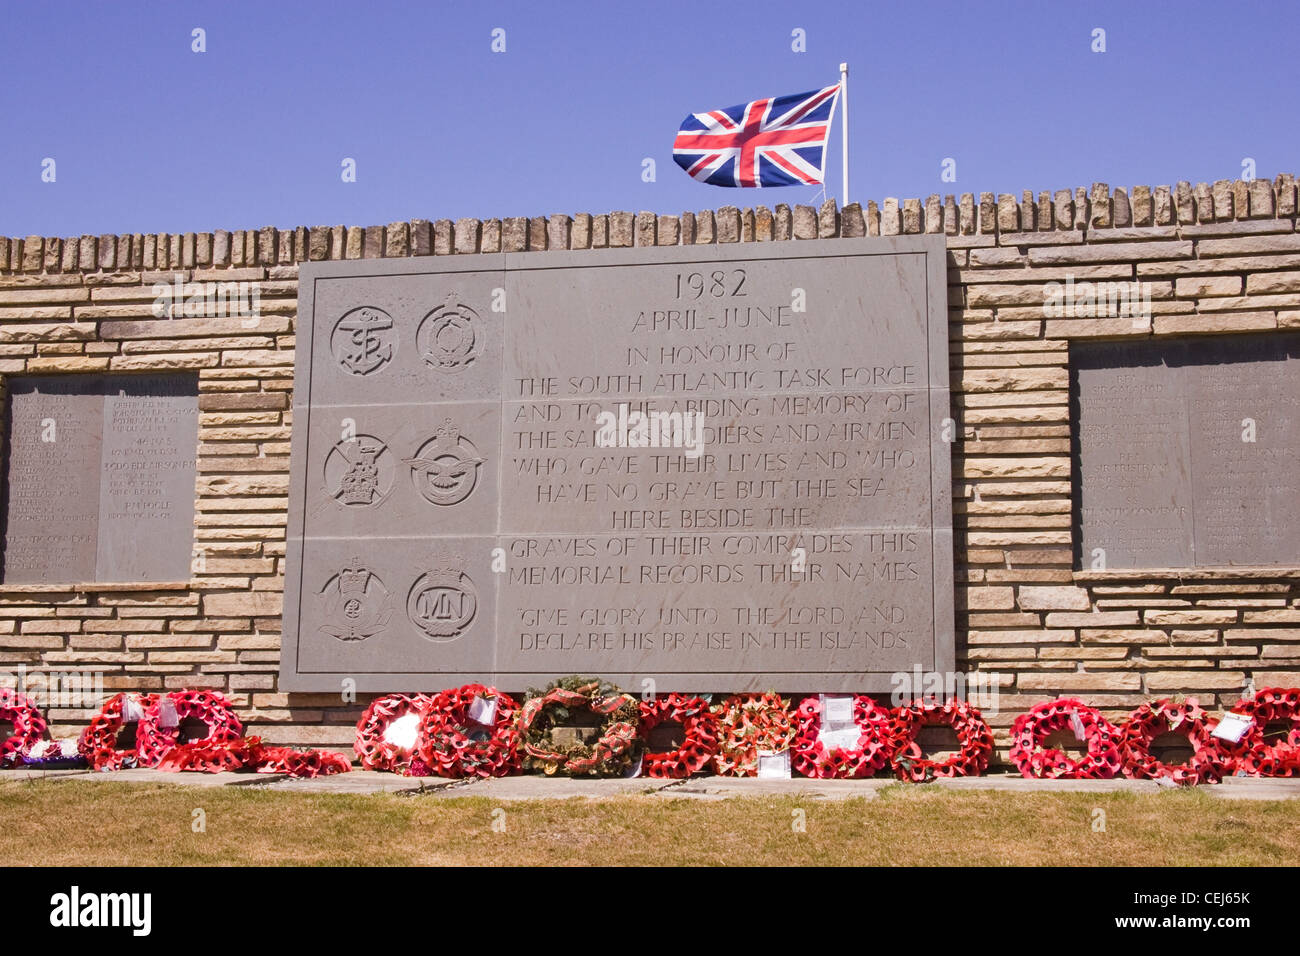 British Cimitero Militare di San Carlos, Isole Falkland per commemorare i morti britannici durante la guerra del 1982 con l'Argentina Foto Stock